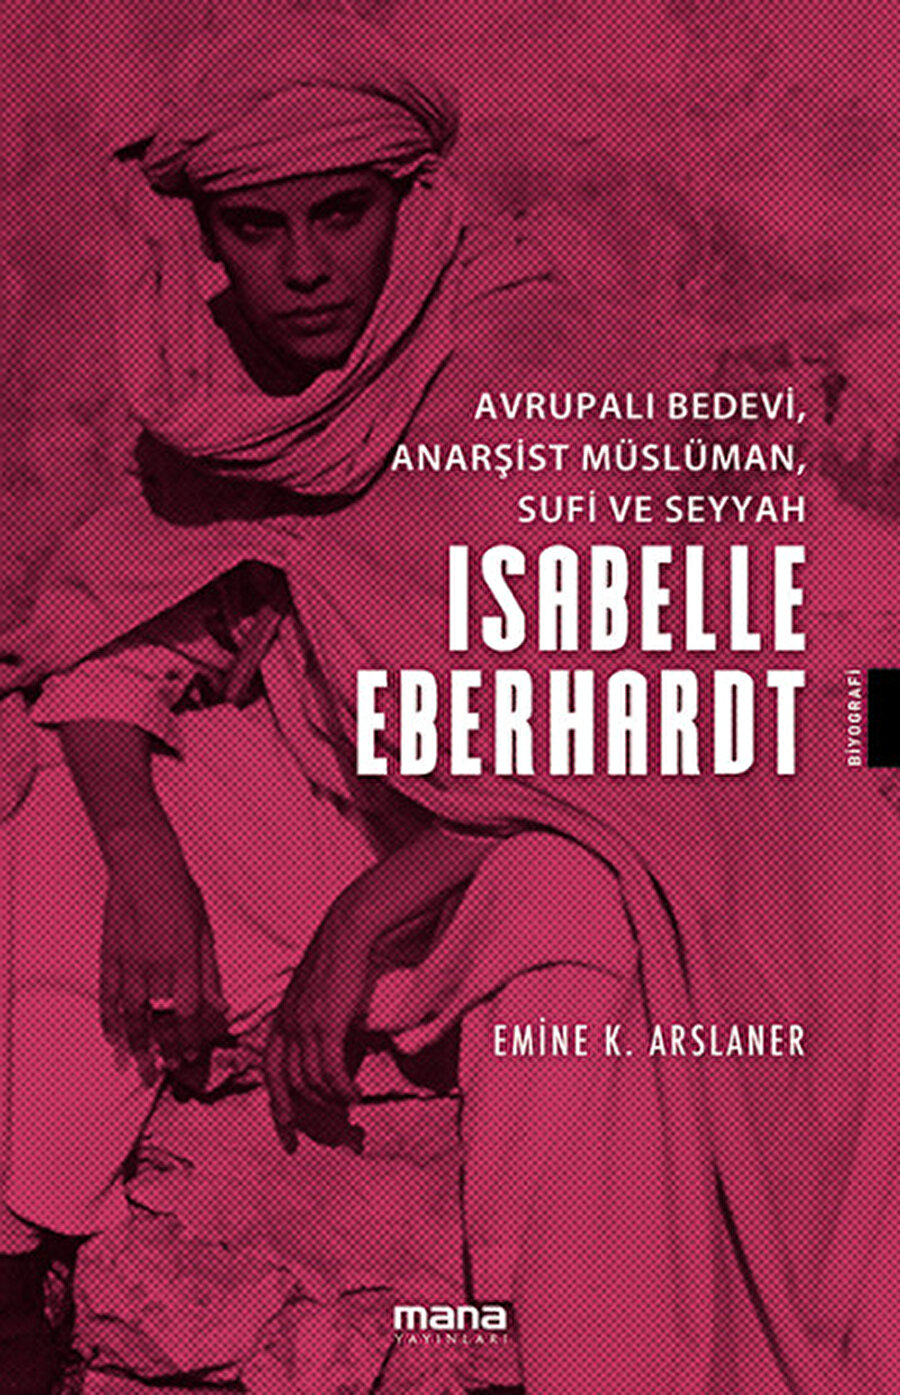 Avrupalı Bedevi, Anarşist Müslüman, Sufi ve Seyyah Isabelle Eberhardt kitabı